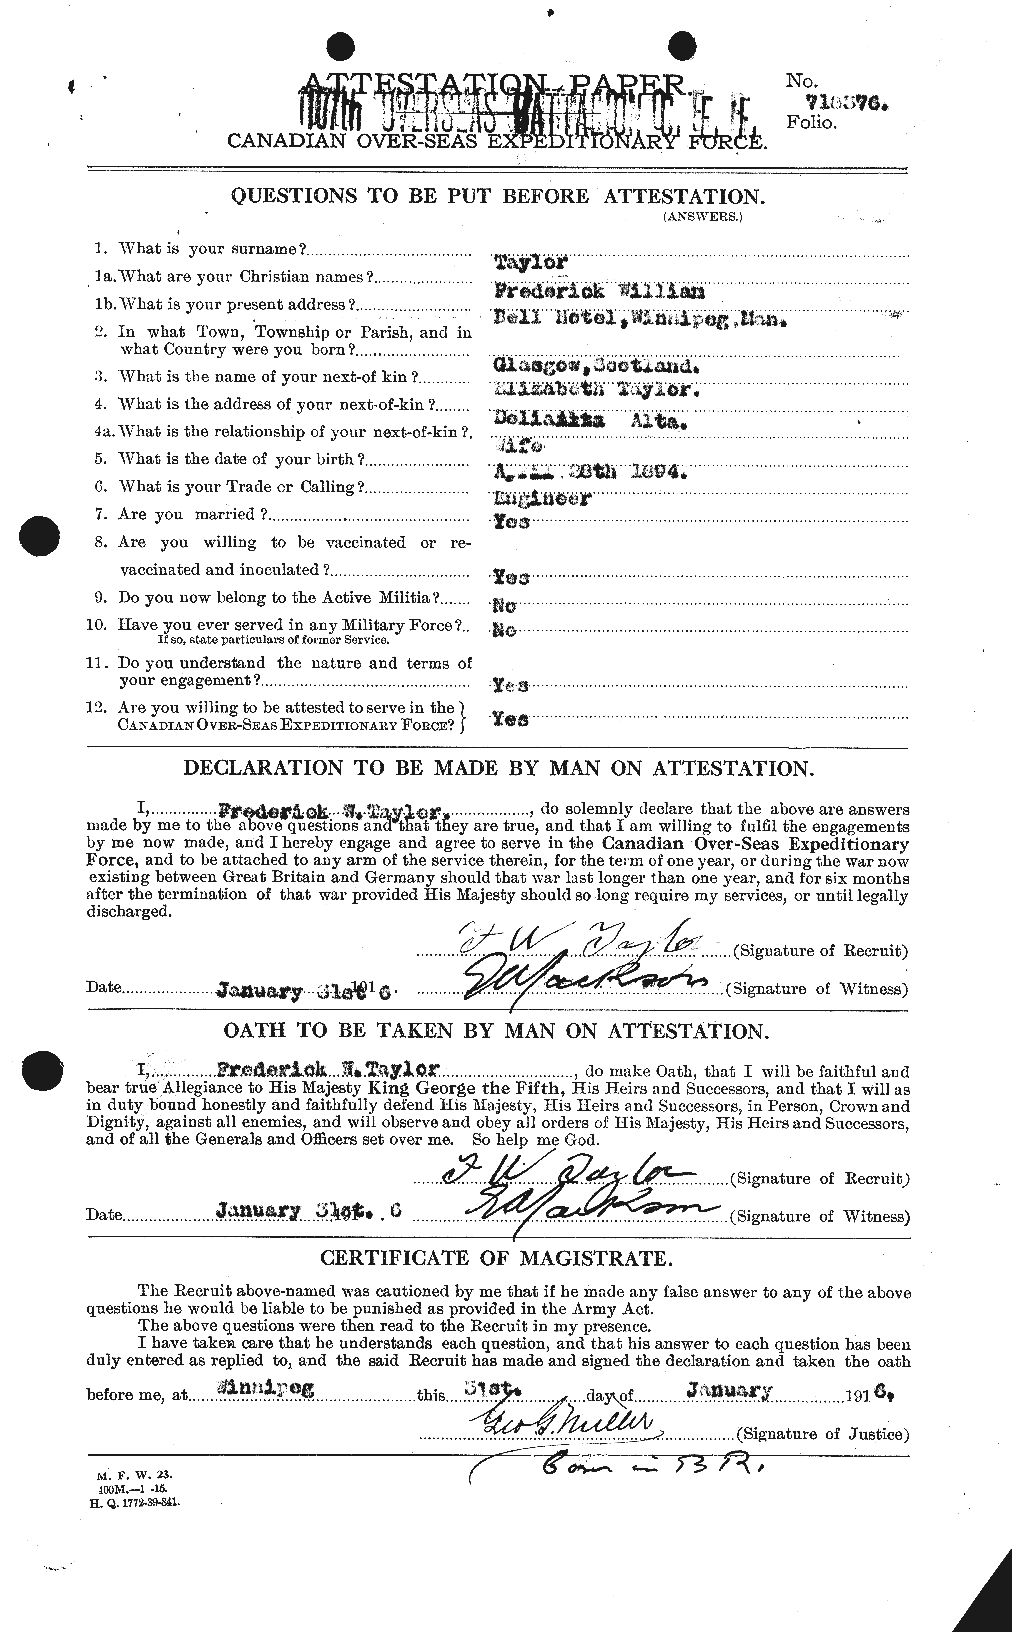 Dossiers du Personnel de la Première Guerre mondiale - CEC 625828a